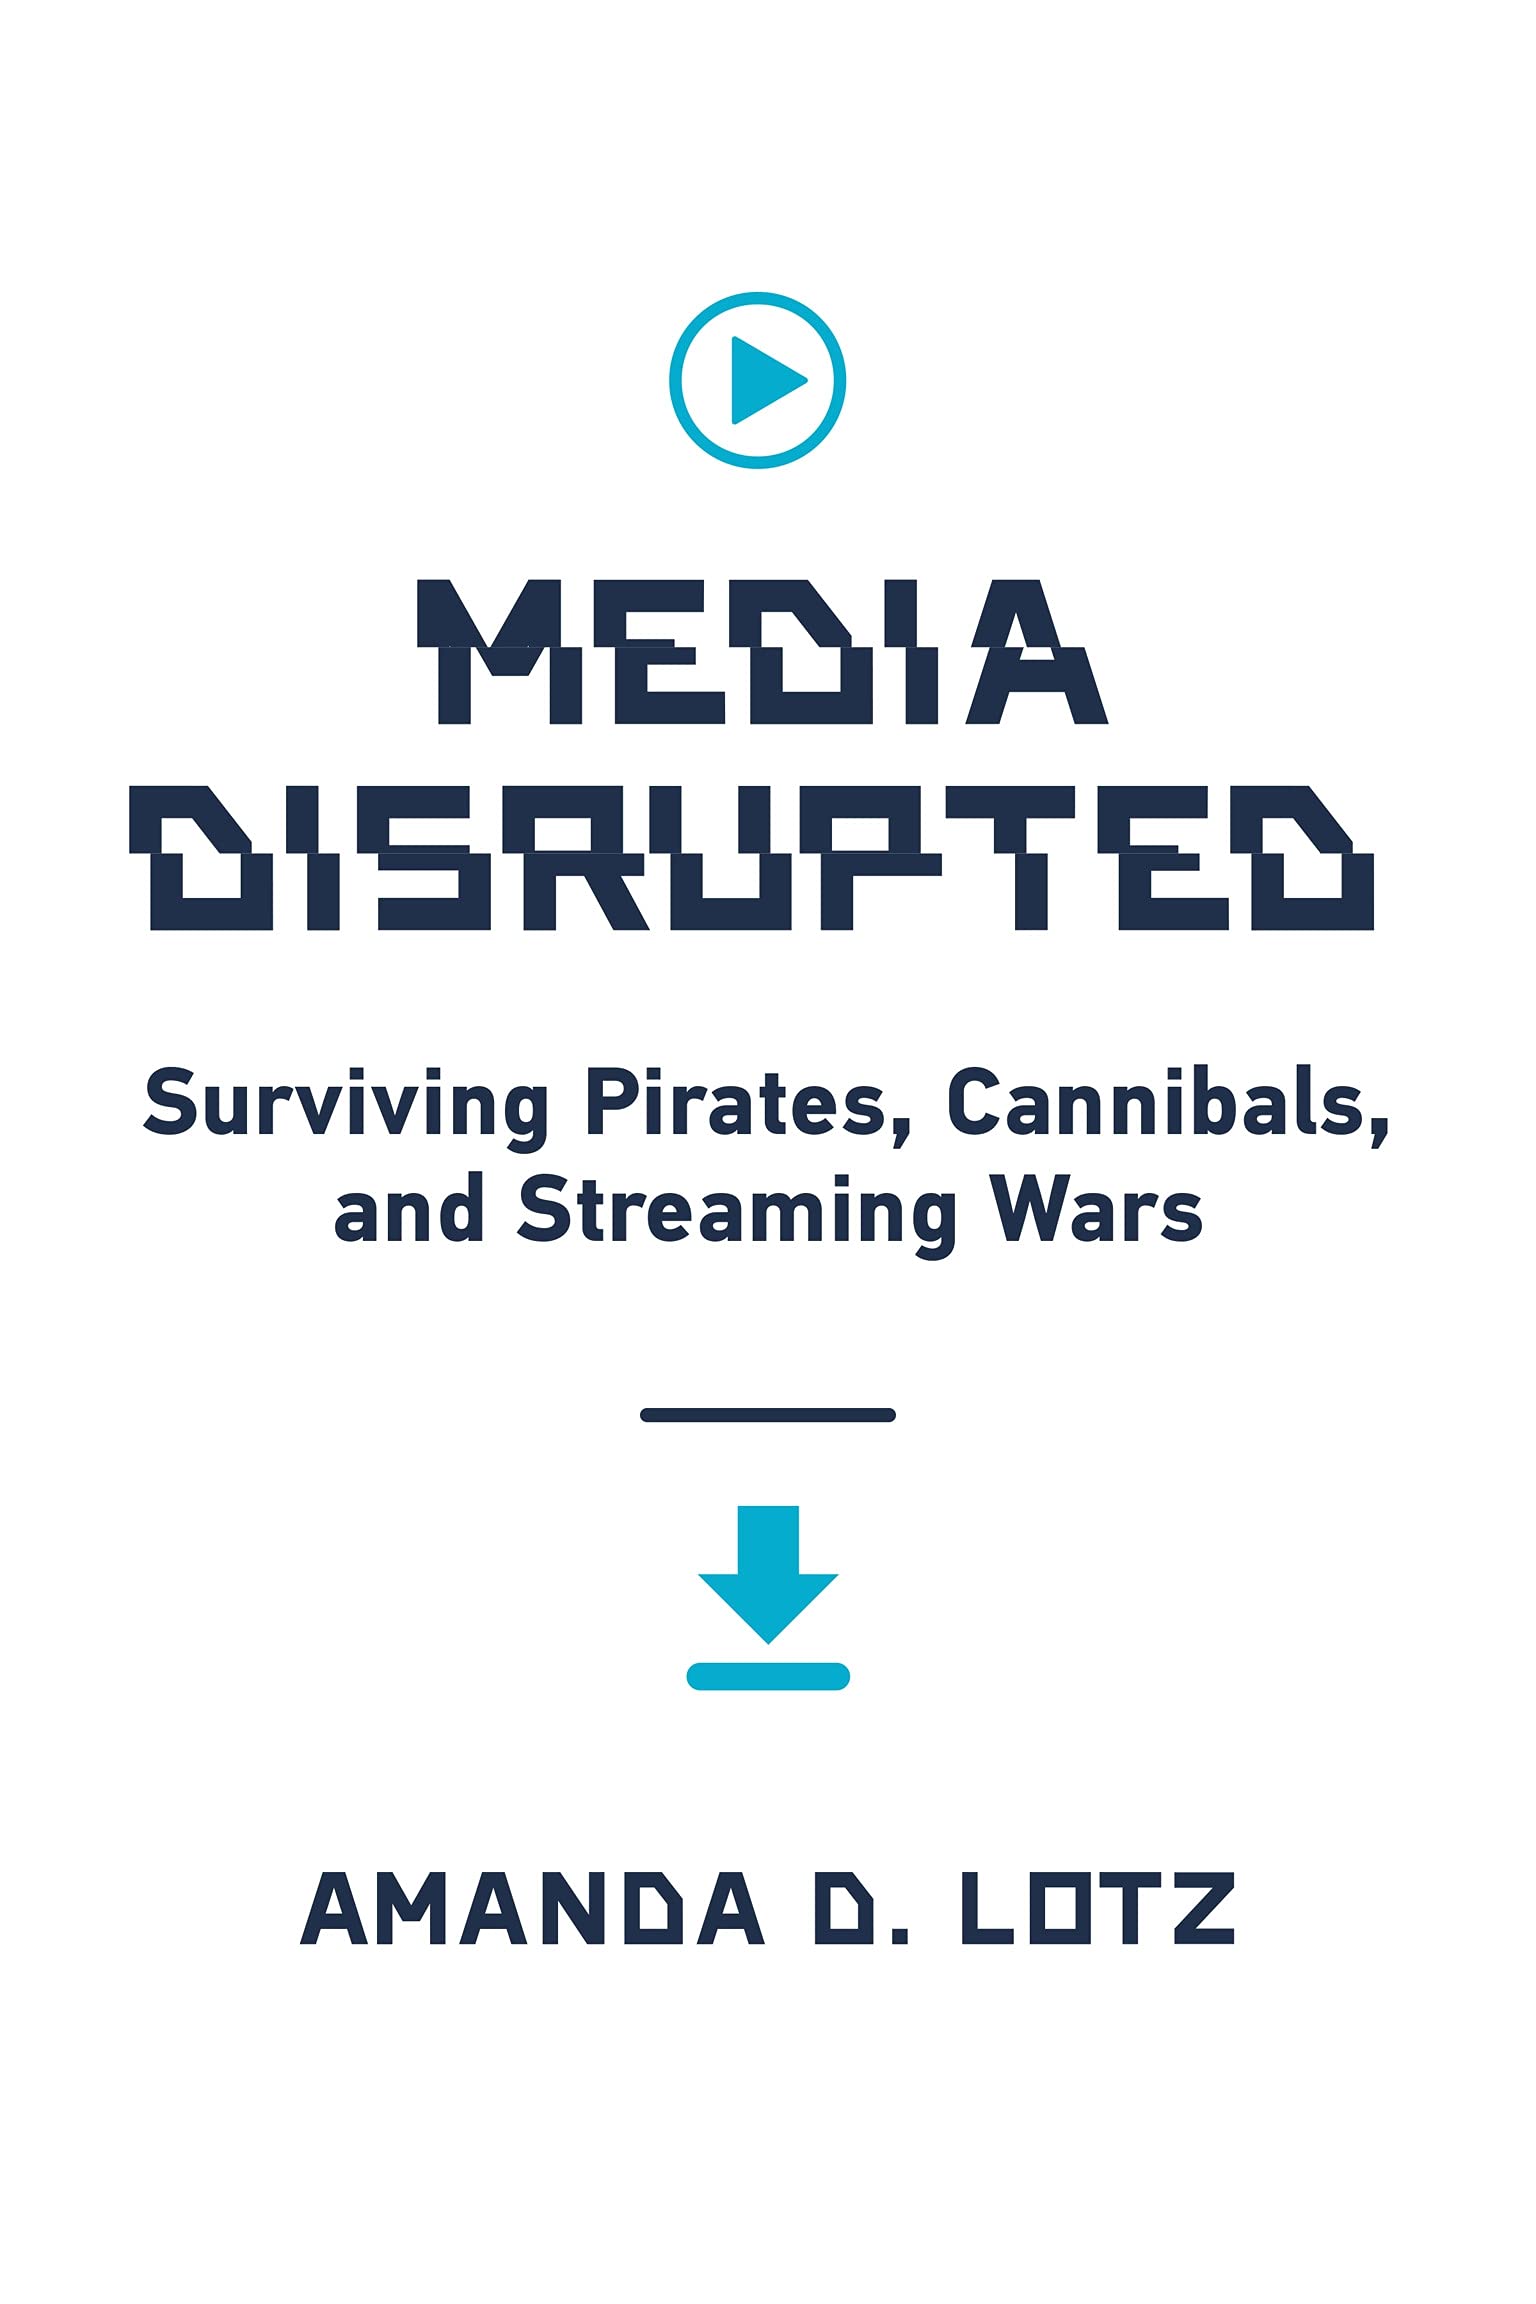 Media Disrupted | Amanda D. Lotz